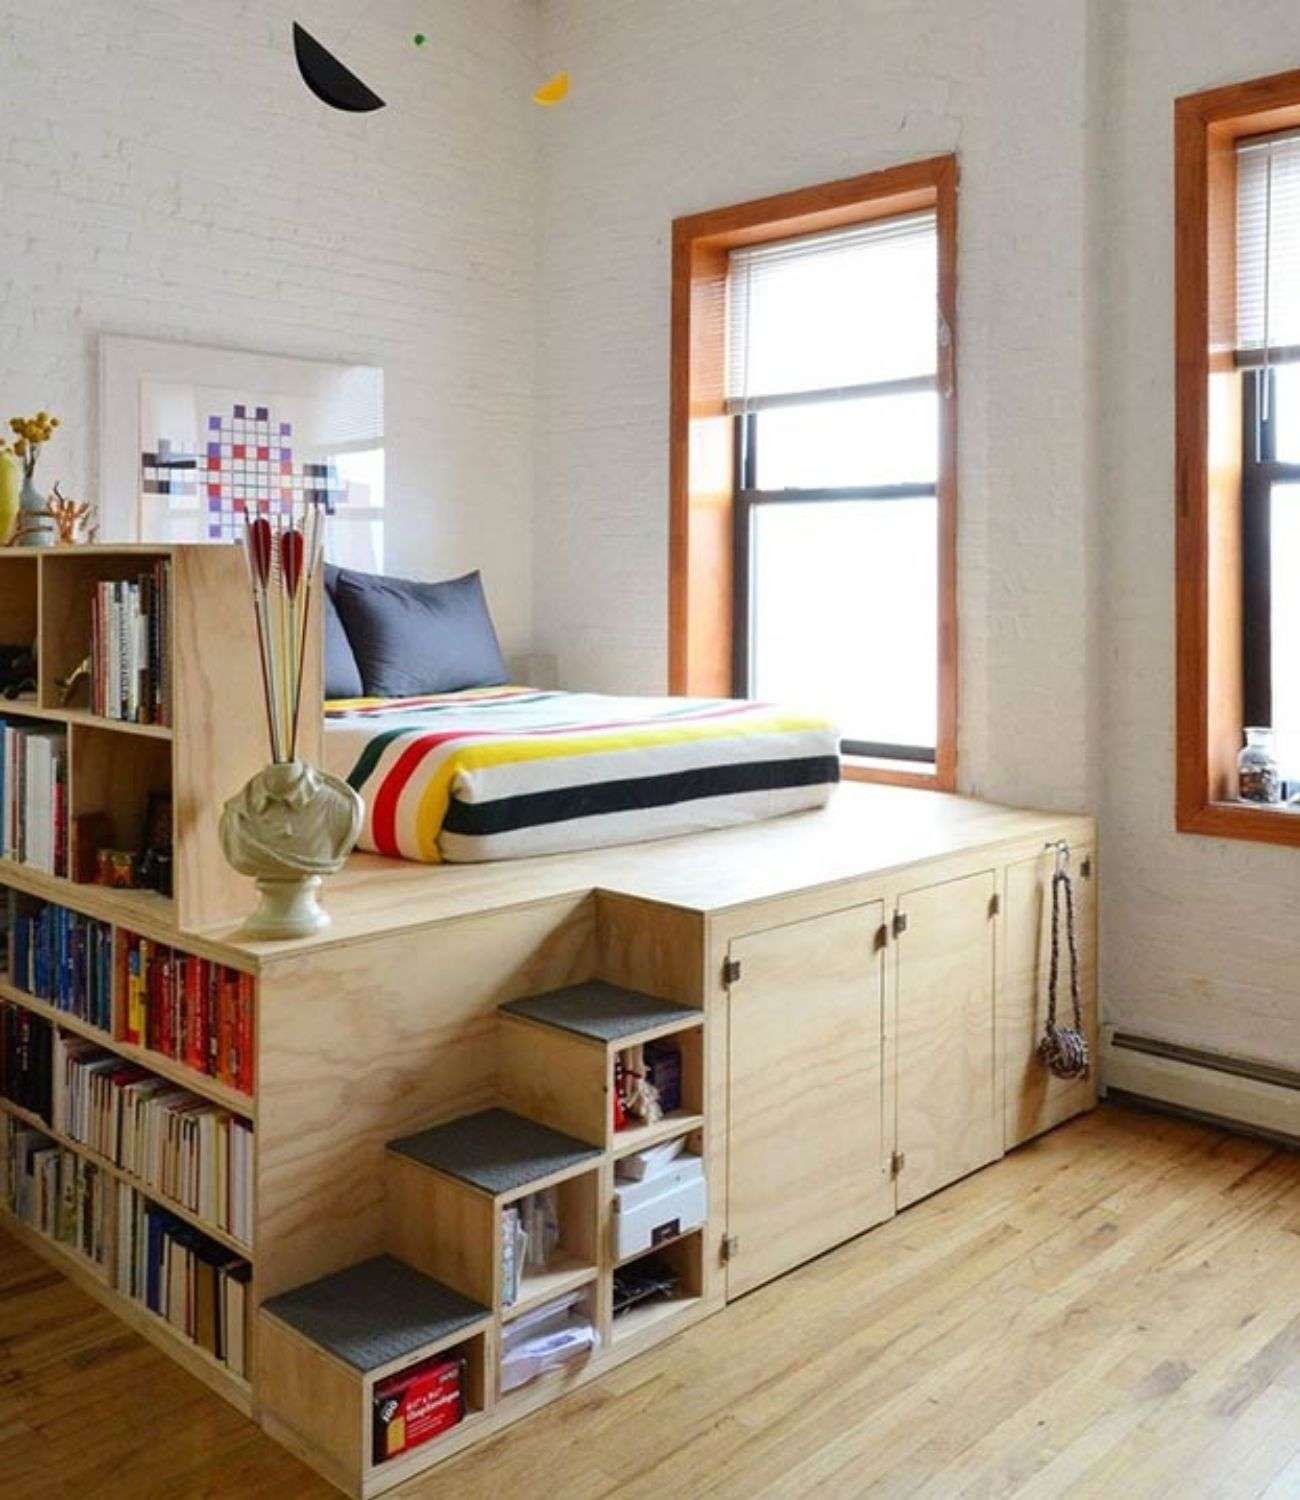 Giường ngủ treo kết hợp tủ sách và ngăn chứa đồ vật